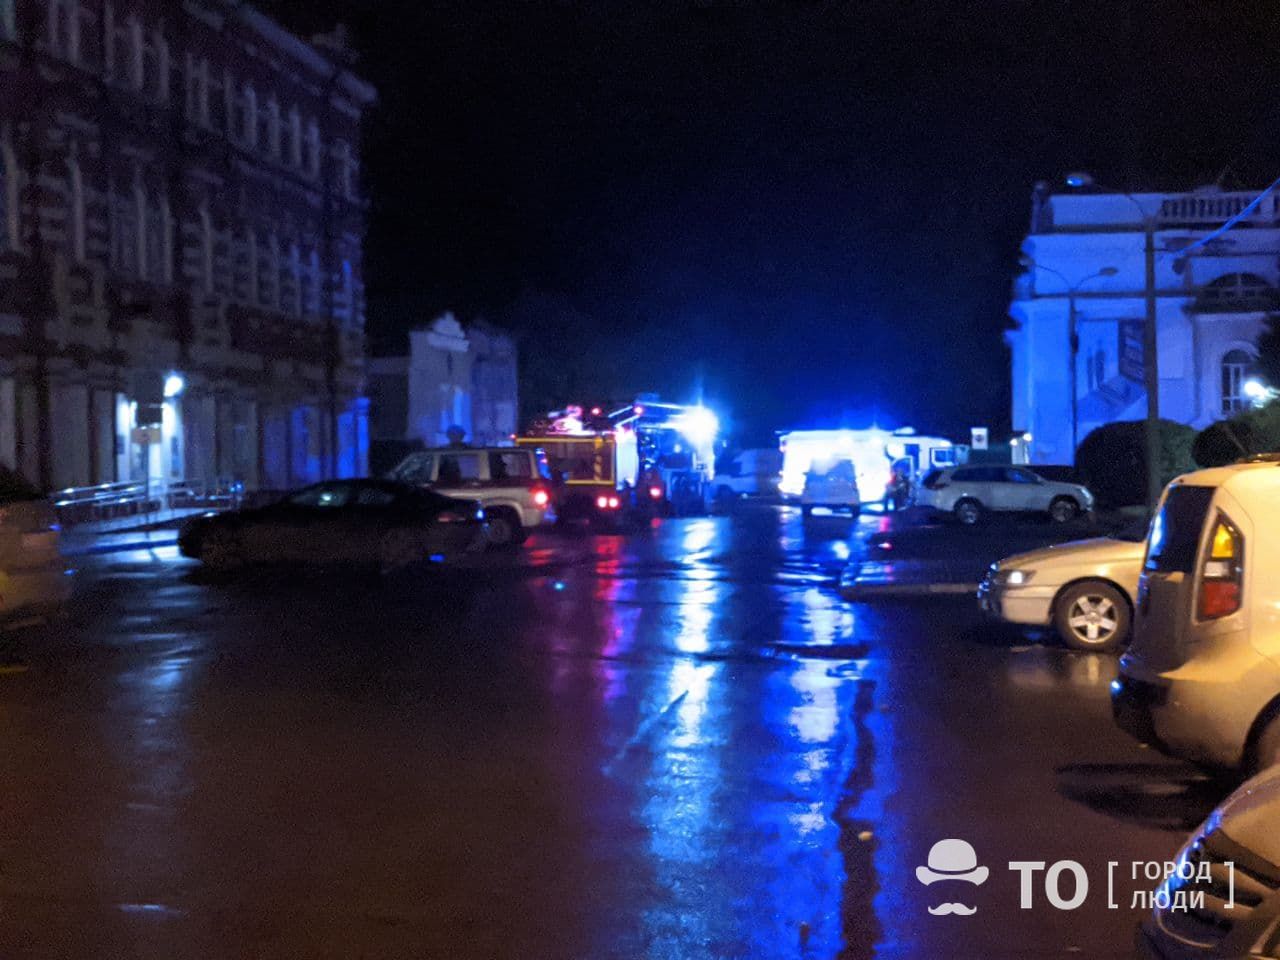 Происшествия, Томские новости, пожар горит огонь загорелись сводка происшествий жесть Томска В здании томского ТЮЗа произошел пожар, один человек пострадал